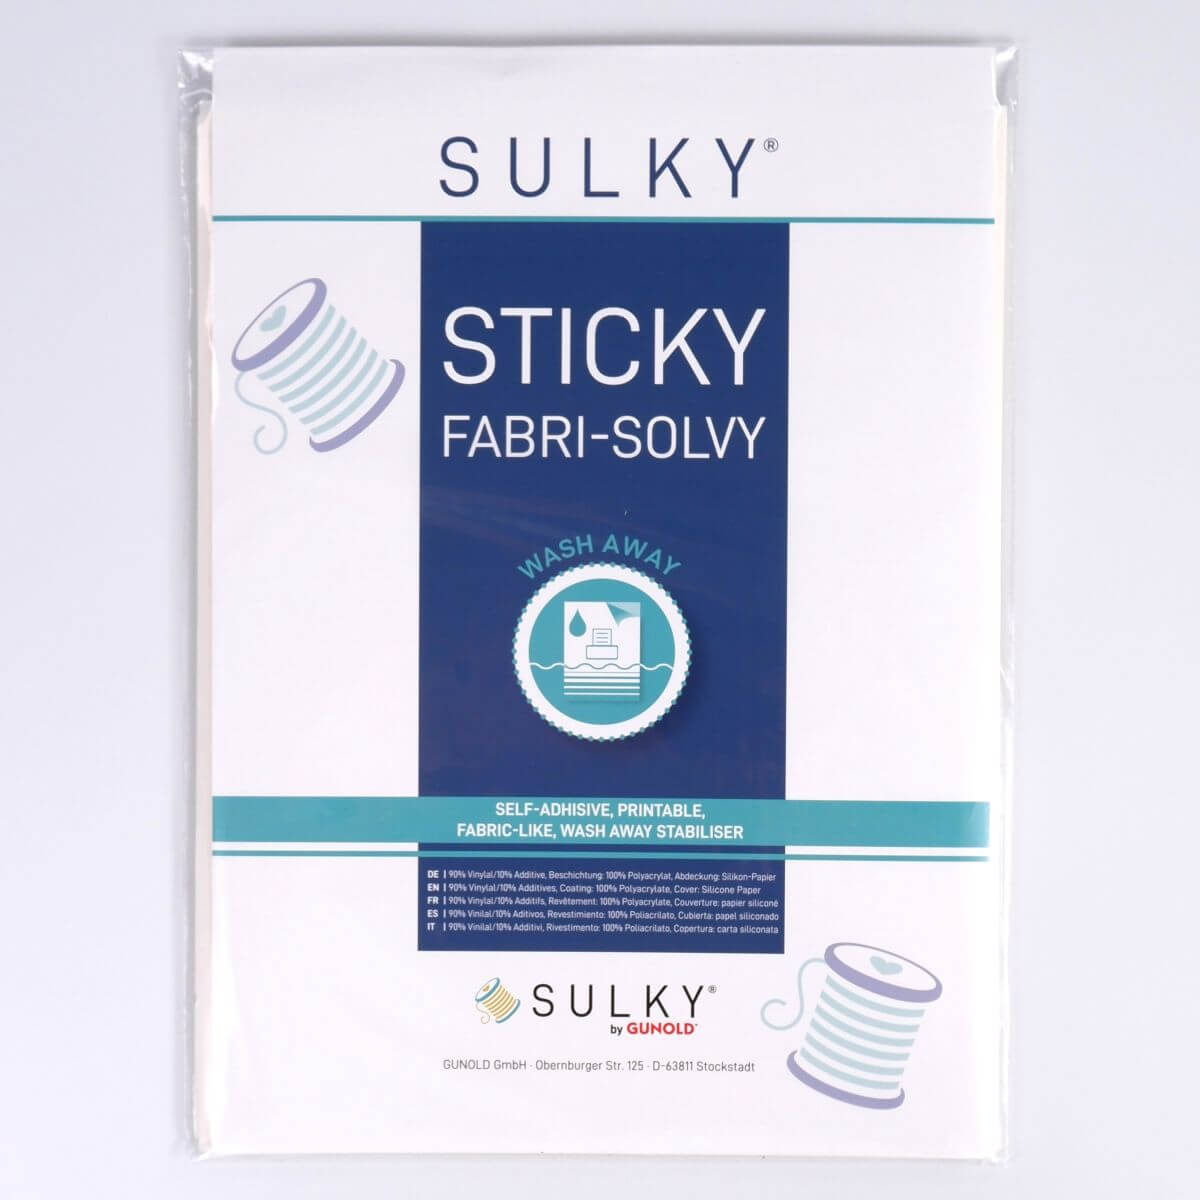 SULKY STICKY FABRI-SOLVY, 12 Blatt á 21,5cm
x 28cm